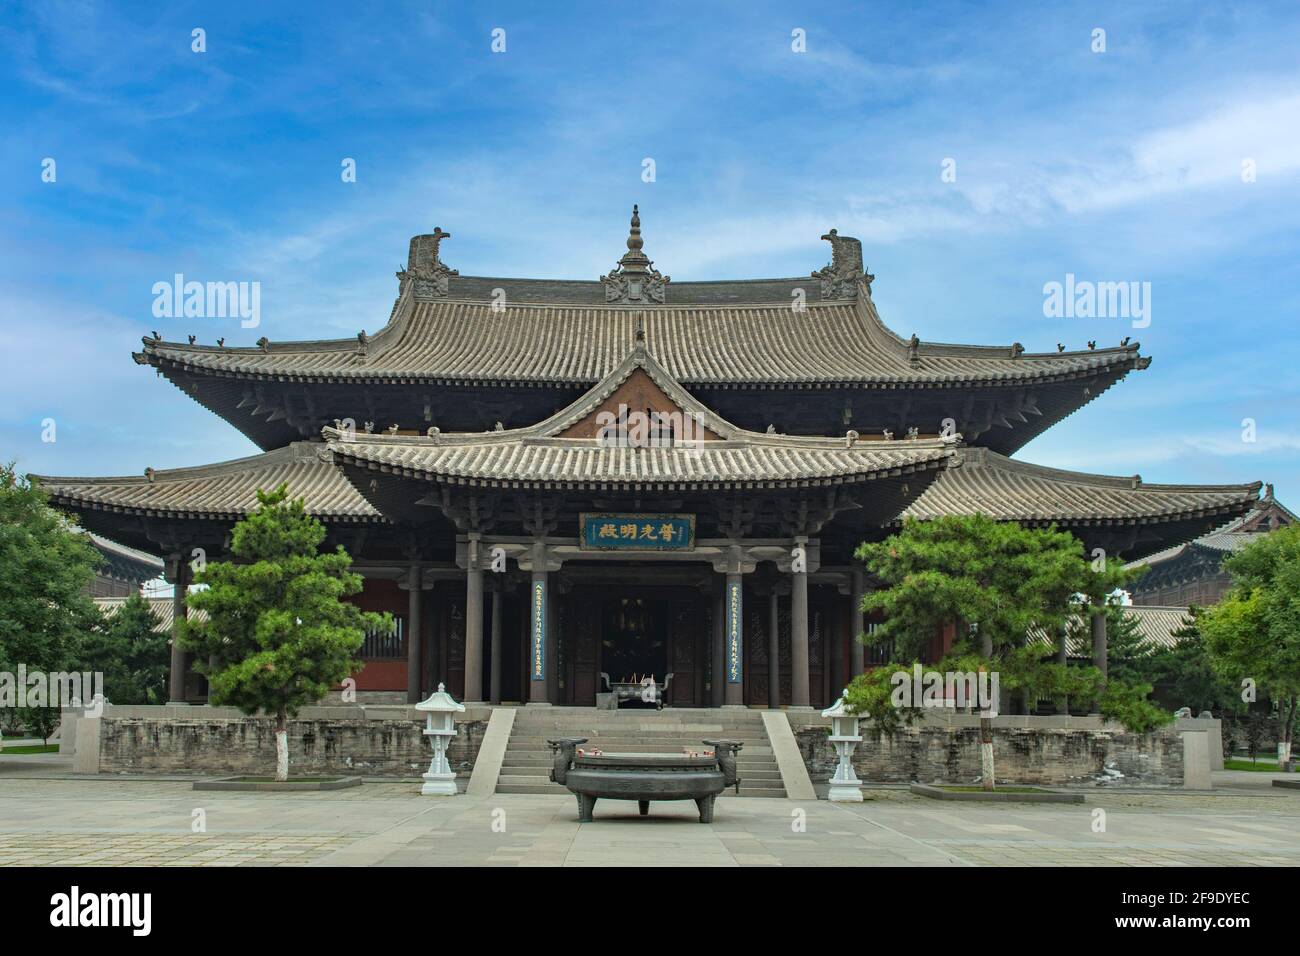 Hall of Universal Brightness, Huayan Monastery, Datong, Shanxi, China Stock Photo